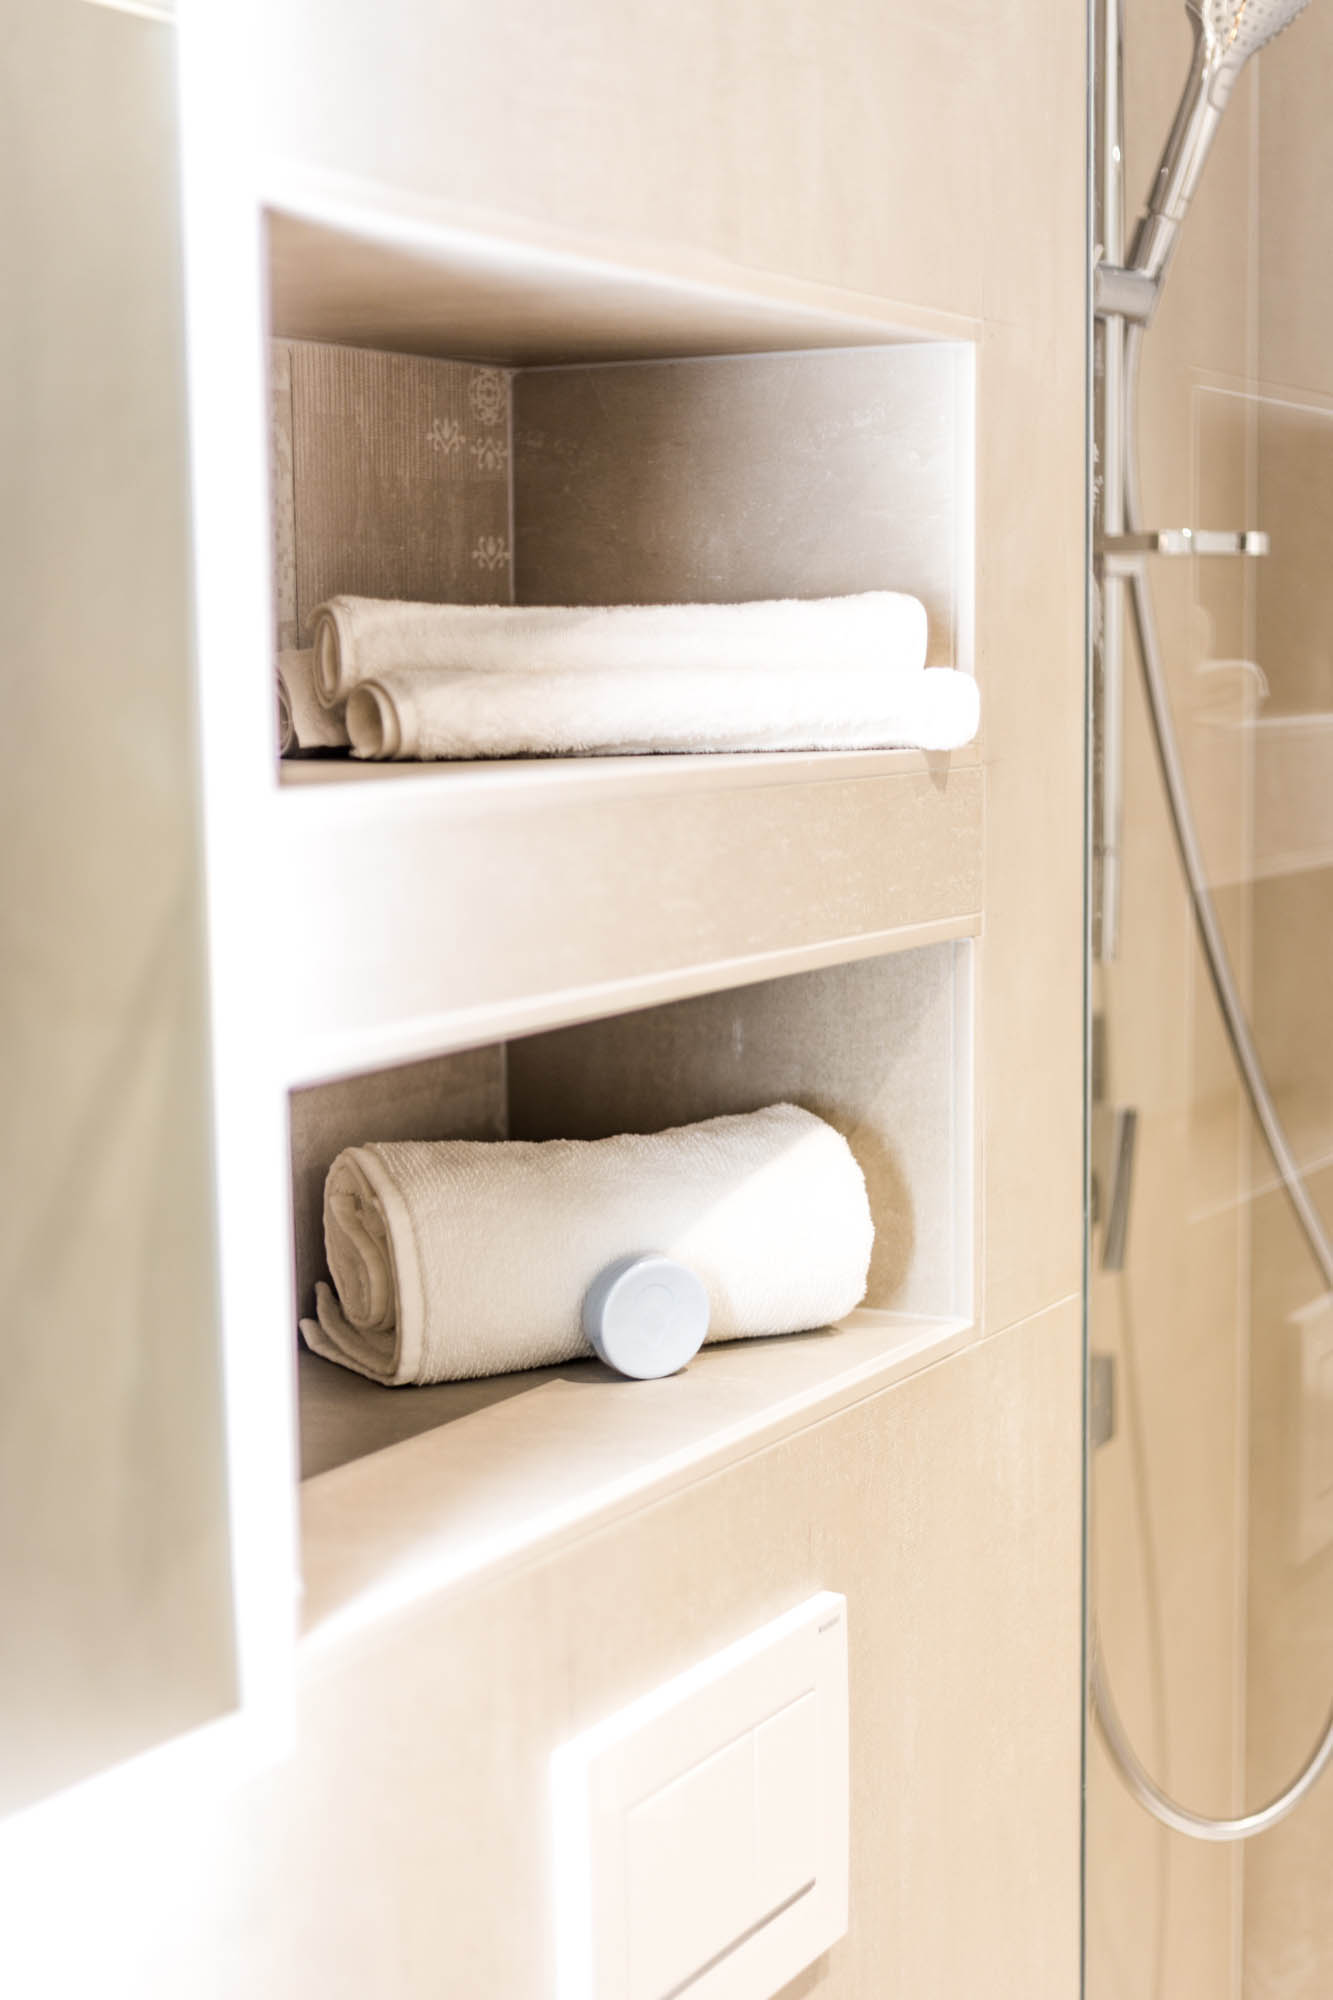 Im Comfortbad gibt es kleine Wandnischen zum verstauen von Handtüchern oder Hygieneartikeln.